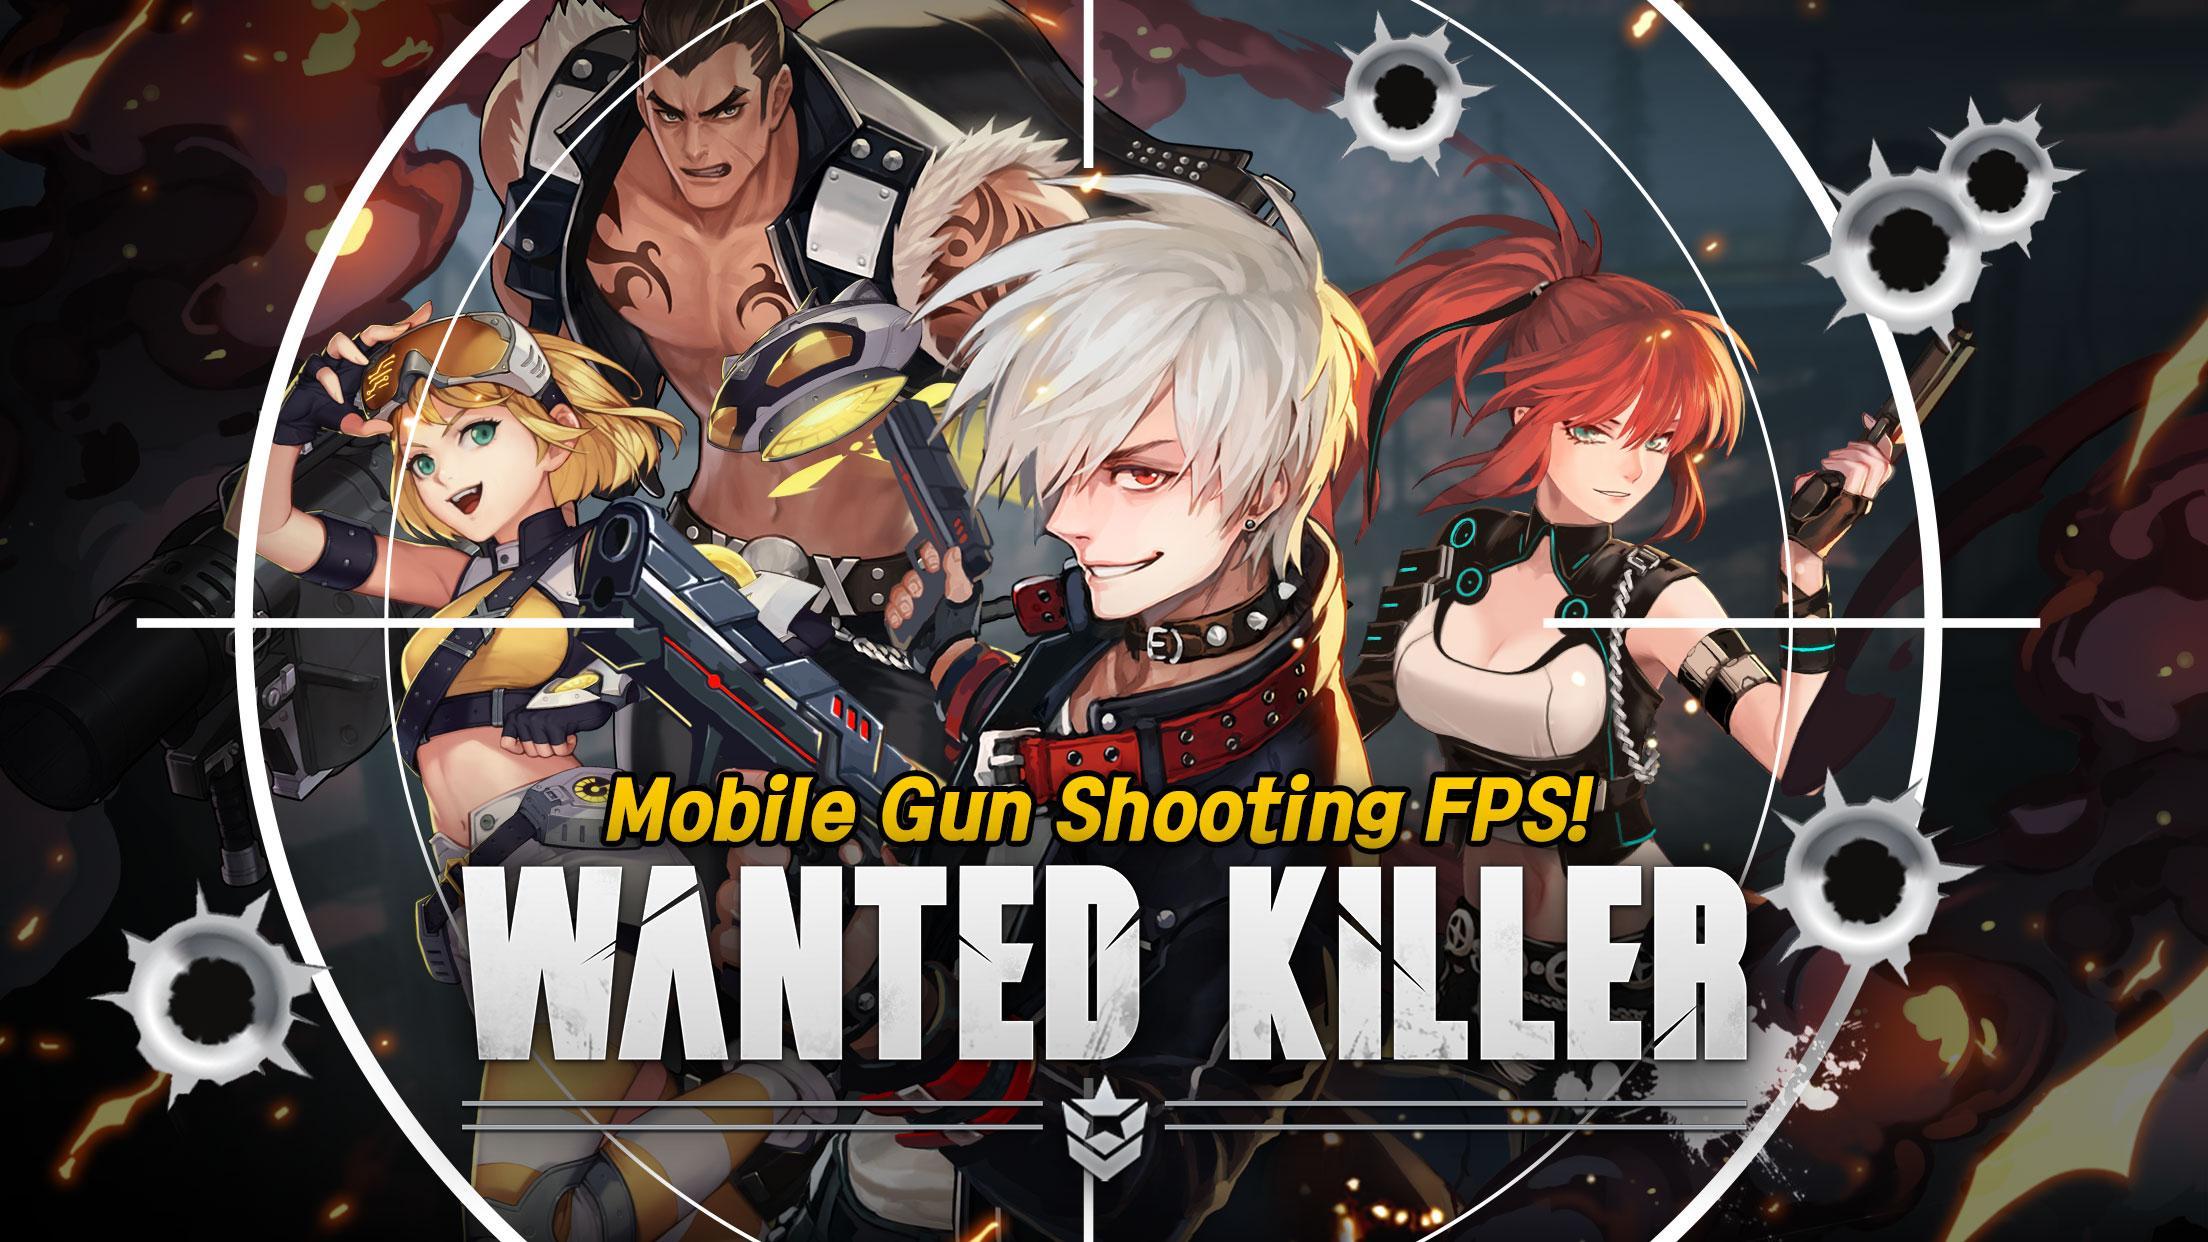 Wanted Killer. Android Killer. Wanted Android. Wanted Bard Dragon Killer плакат. Killers story